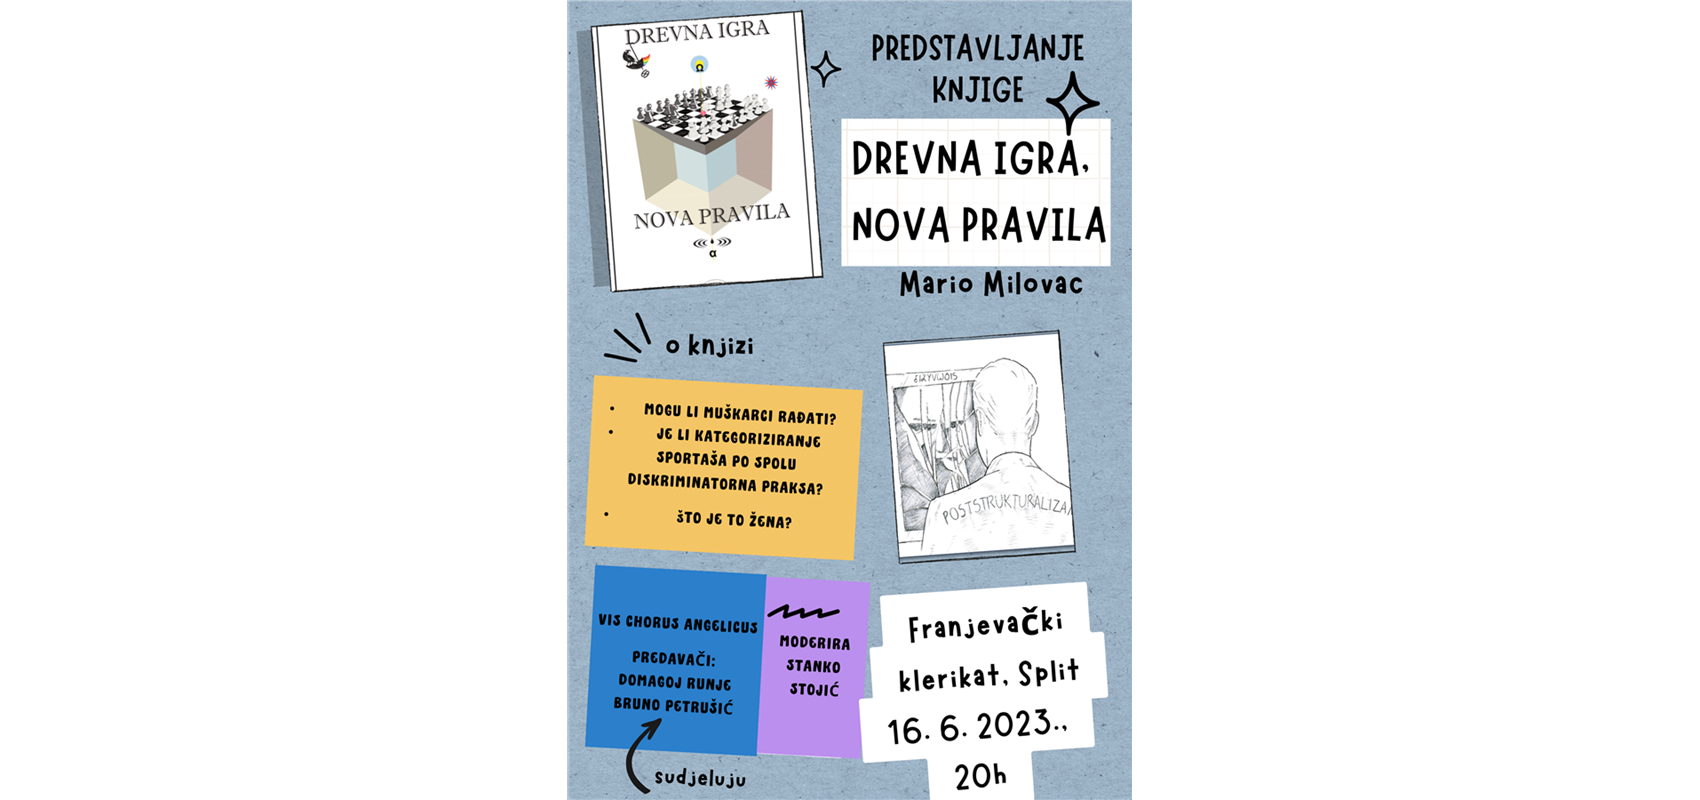 Predstavljanje knjige; Mario Milovac - Drevna igra, nova pravila